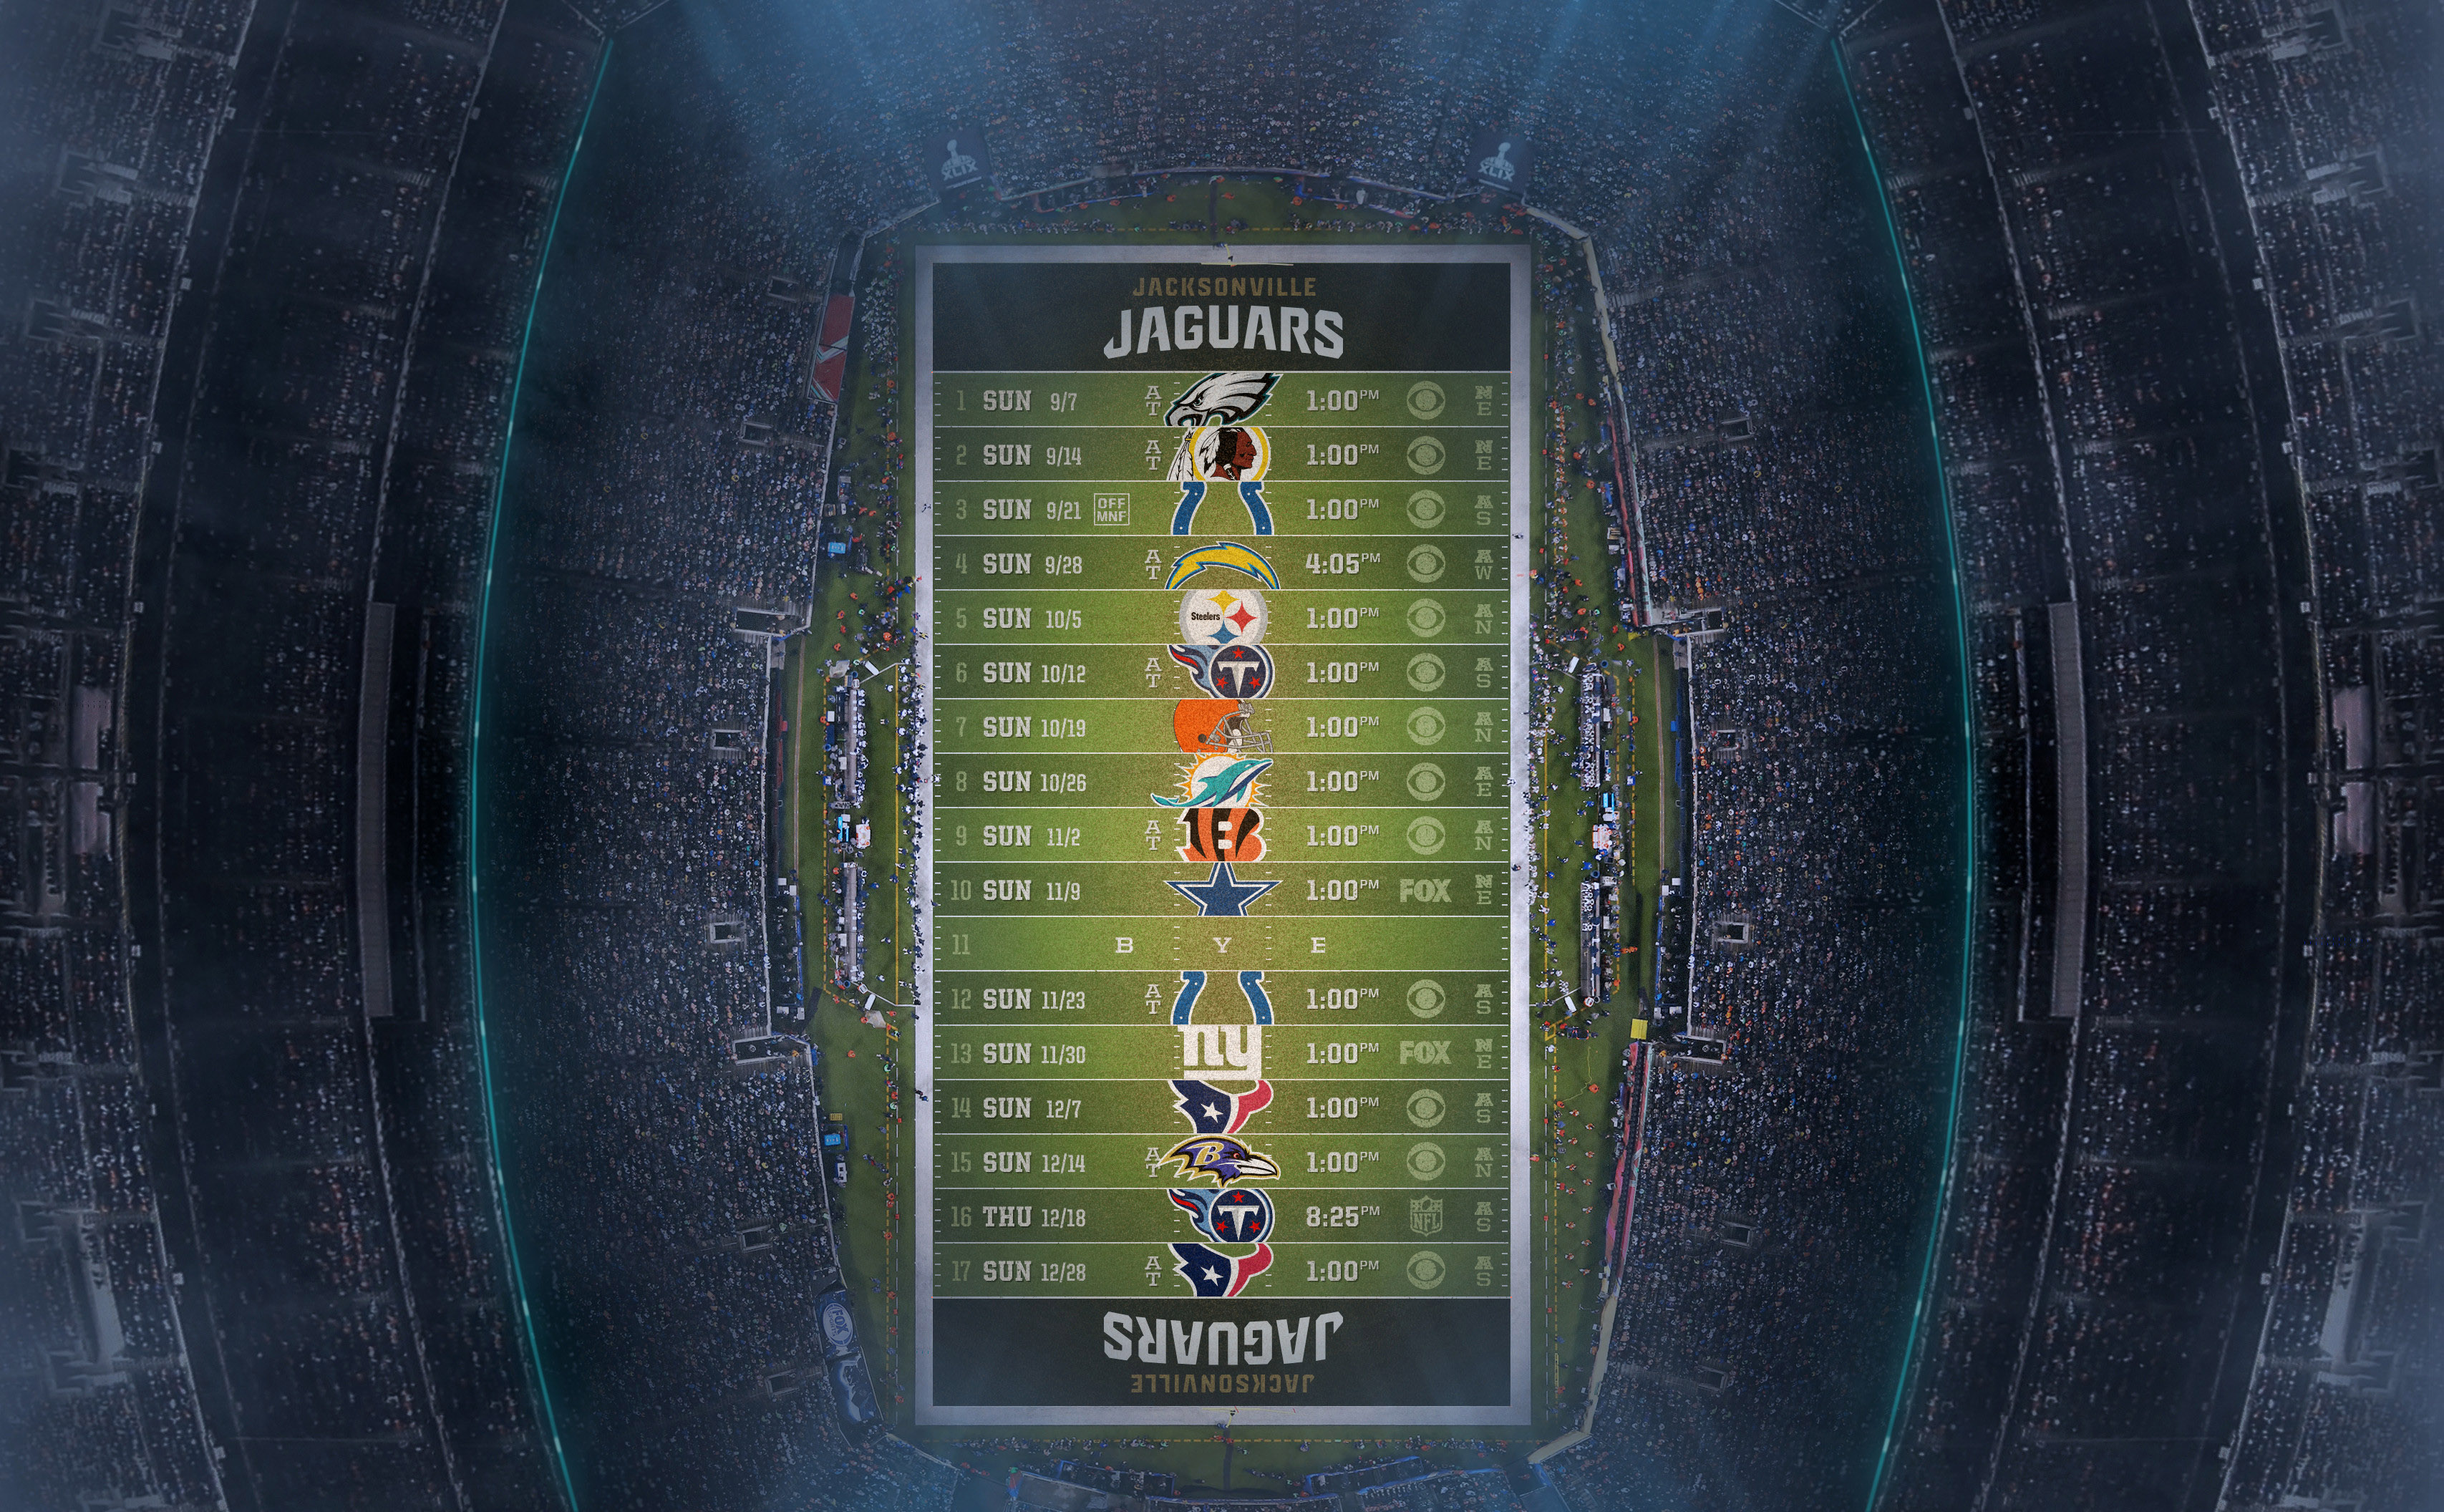 Jacksonville Jaguars 2014 NFL Schedule Wallpaper